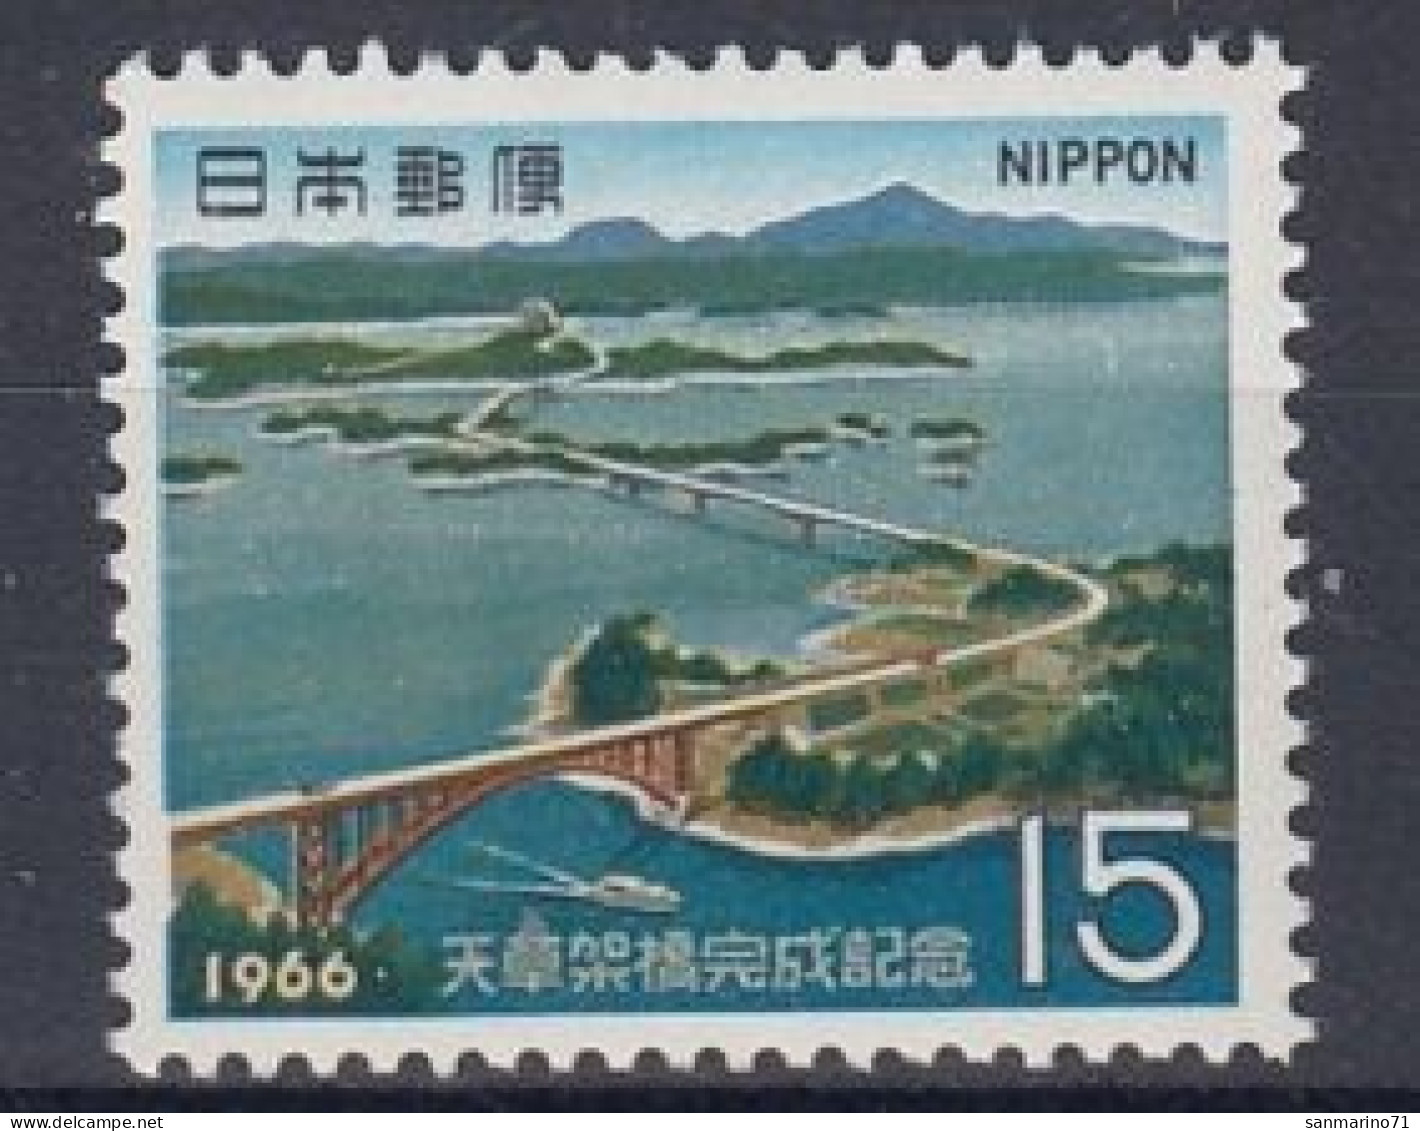 JAPAN 948,unused - Islands